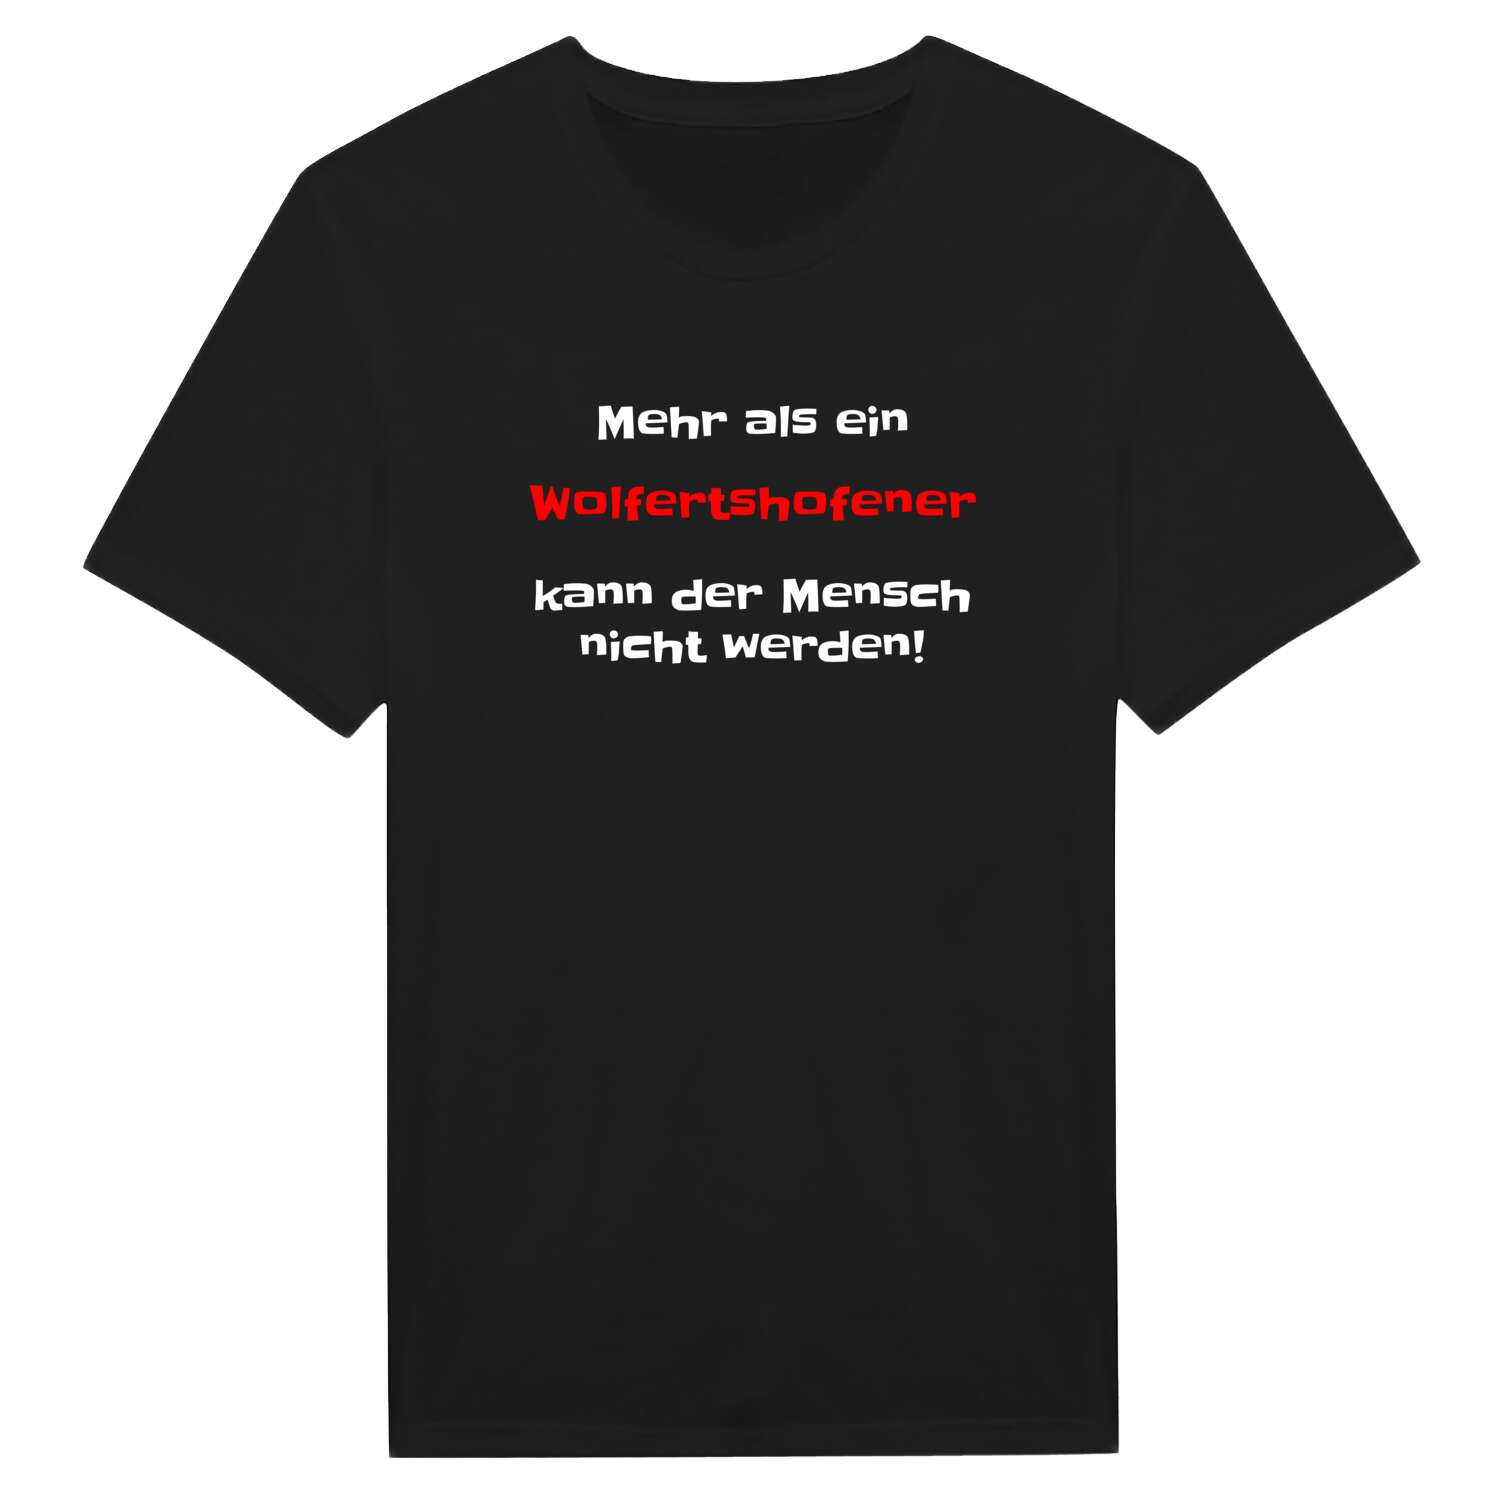 Wolfertshofen T-Shirt »Mehr als ein«